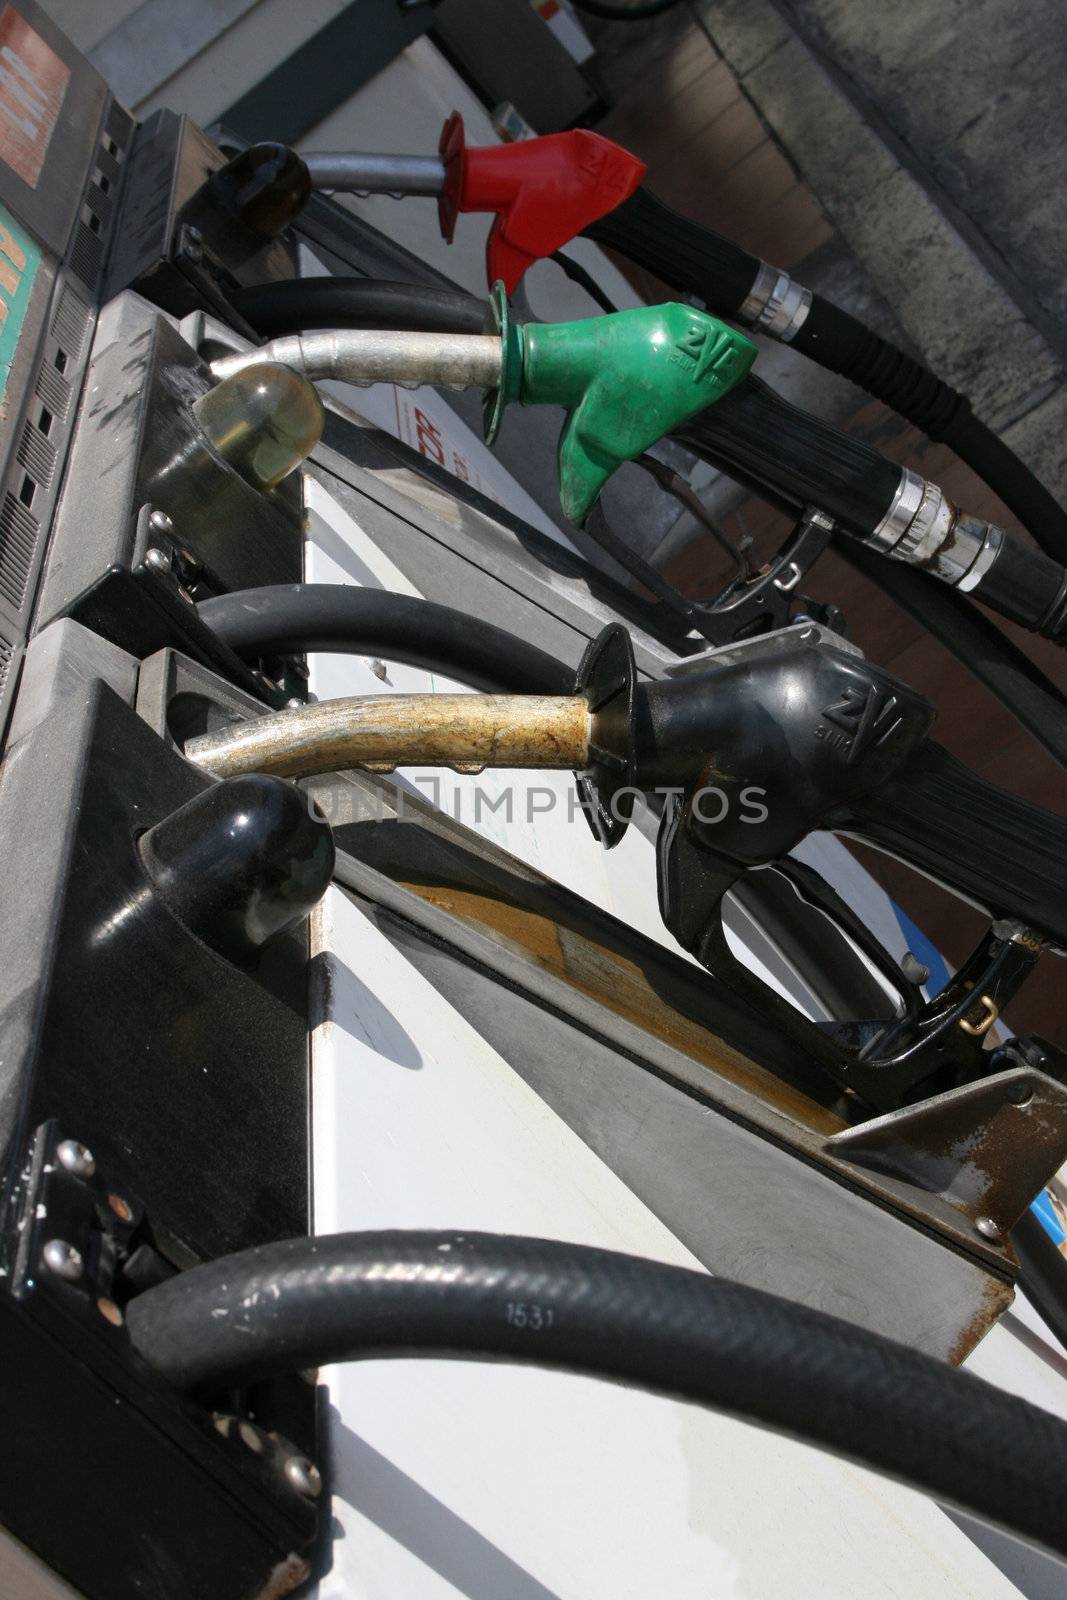 Petrol, Unleaded and diesel tanks